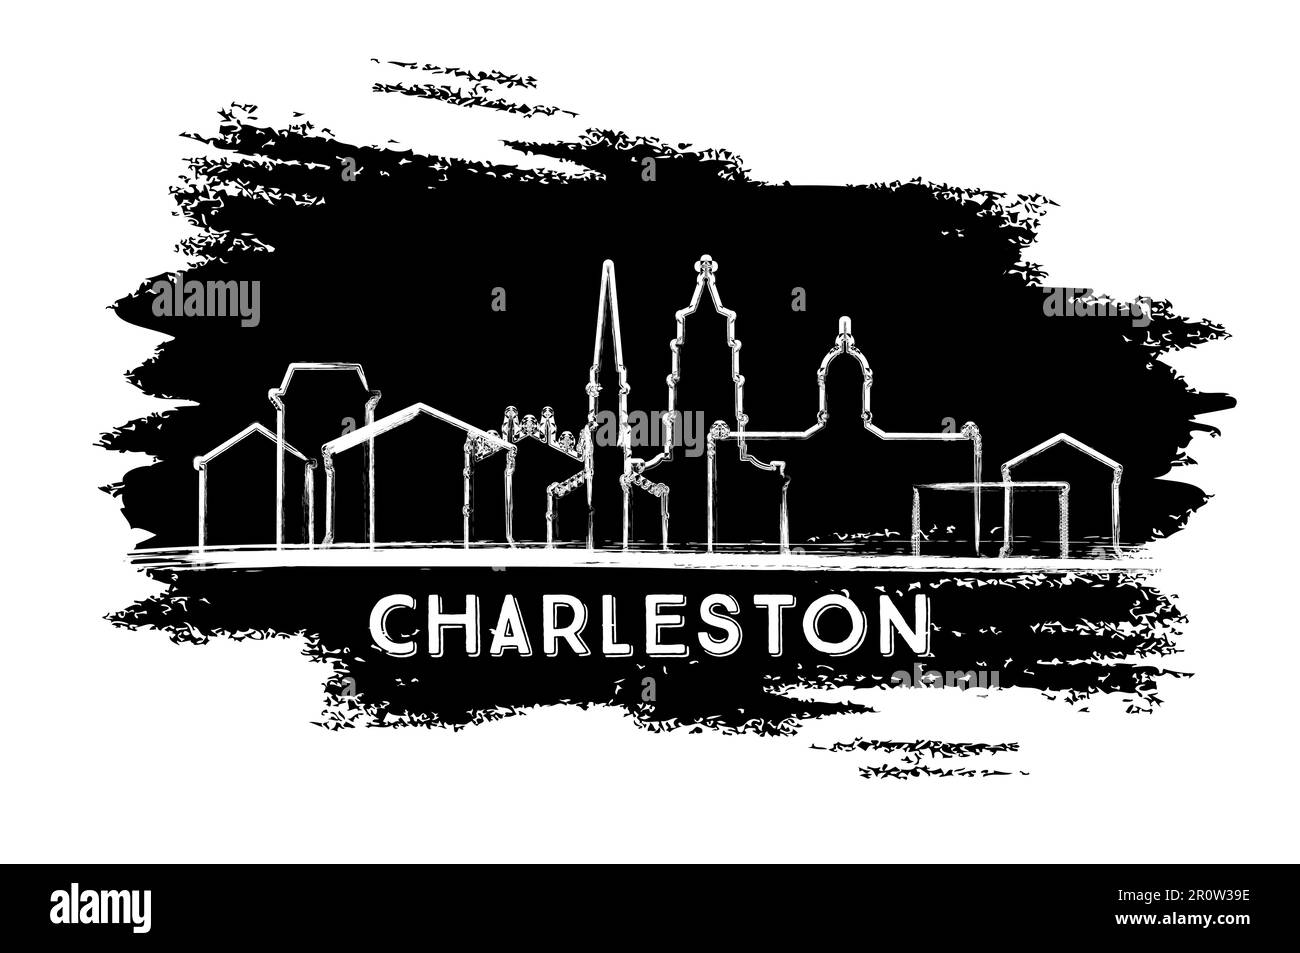 Silhouette Der Skyline Von Charleston South Carolina. Handgezeichnete Skizze. Business Travel and Tourism Concept mit historischer Architektur. Stock Vektor